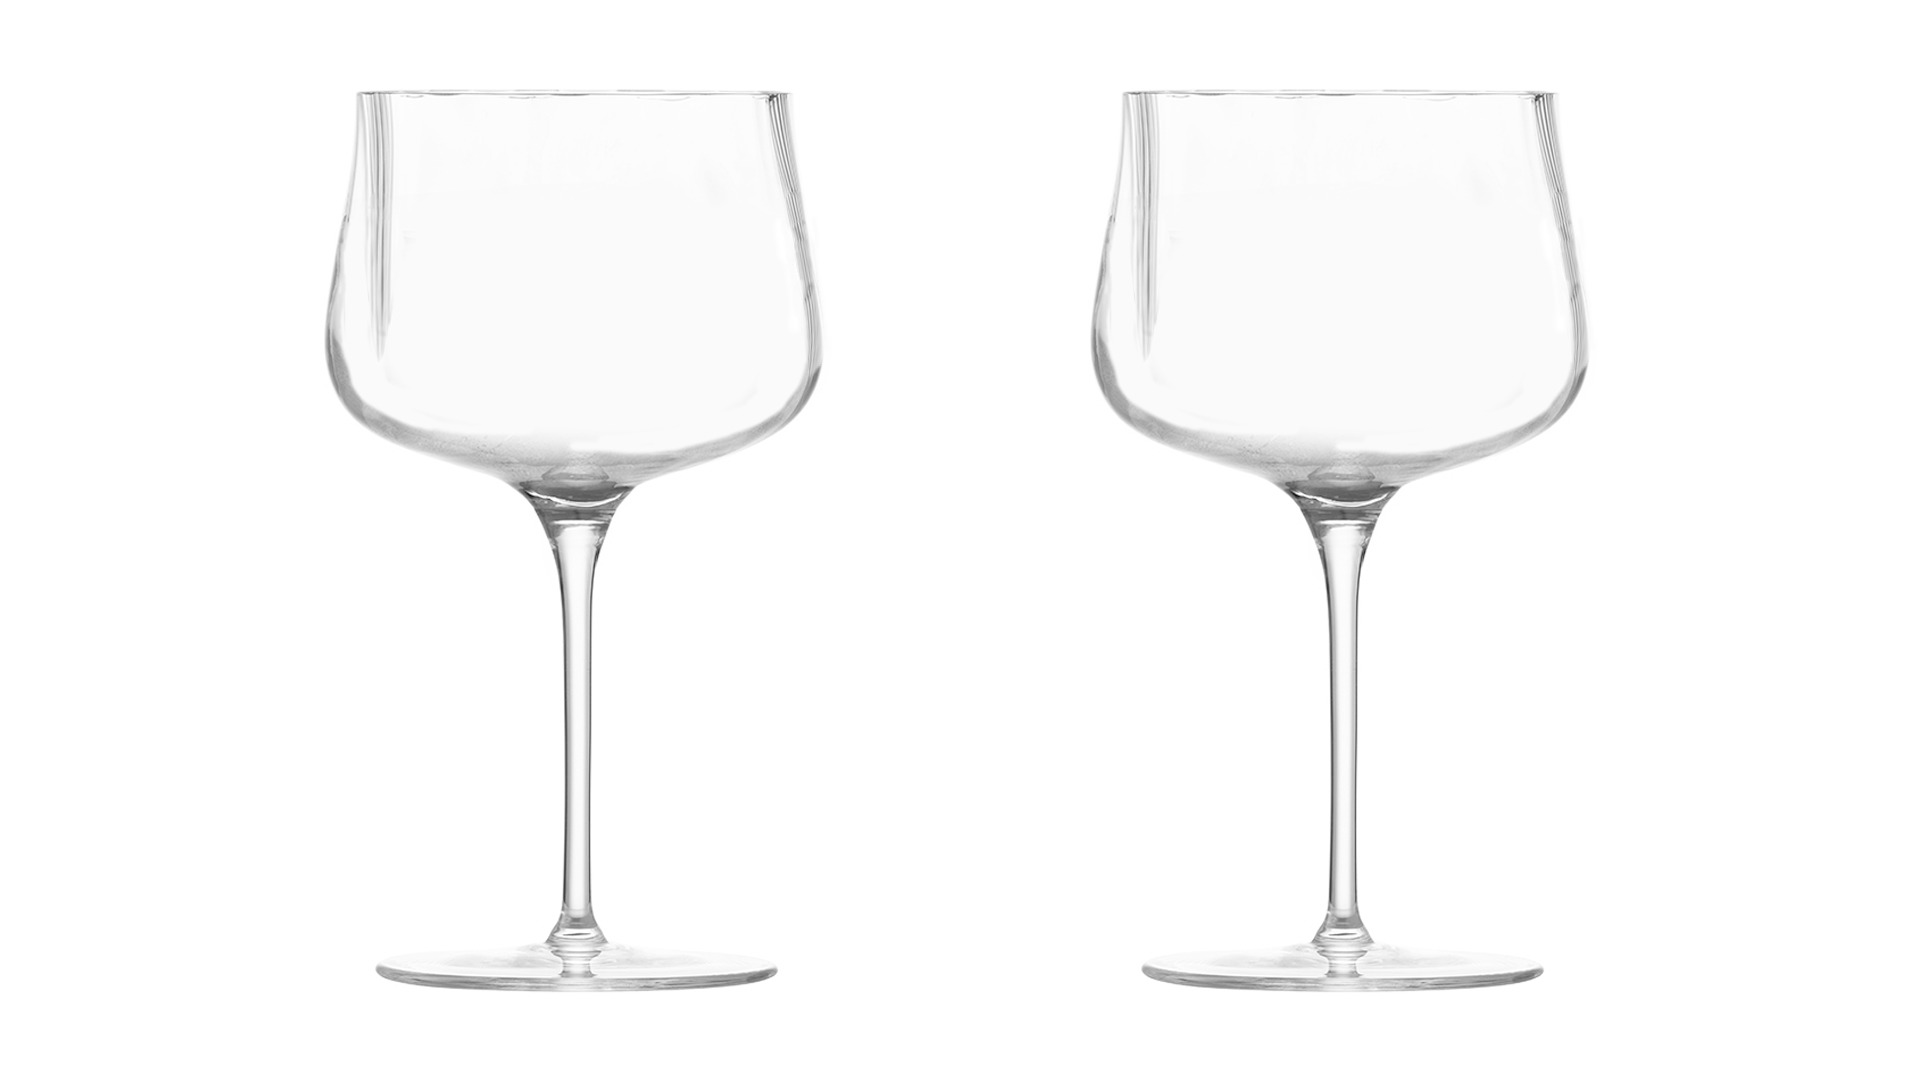 Набор бокалов для коктейля Zwiesel Glas Марлен 190 мл, 2 шт, п/к